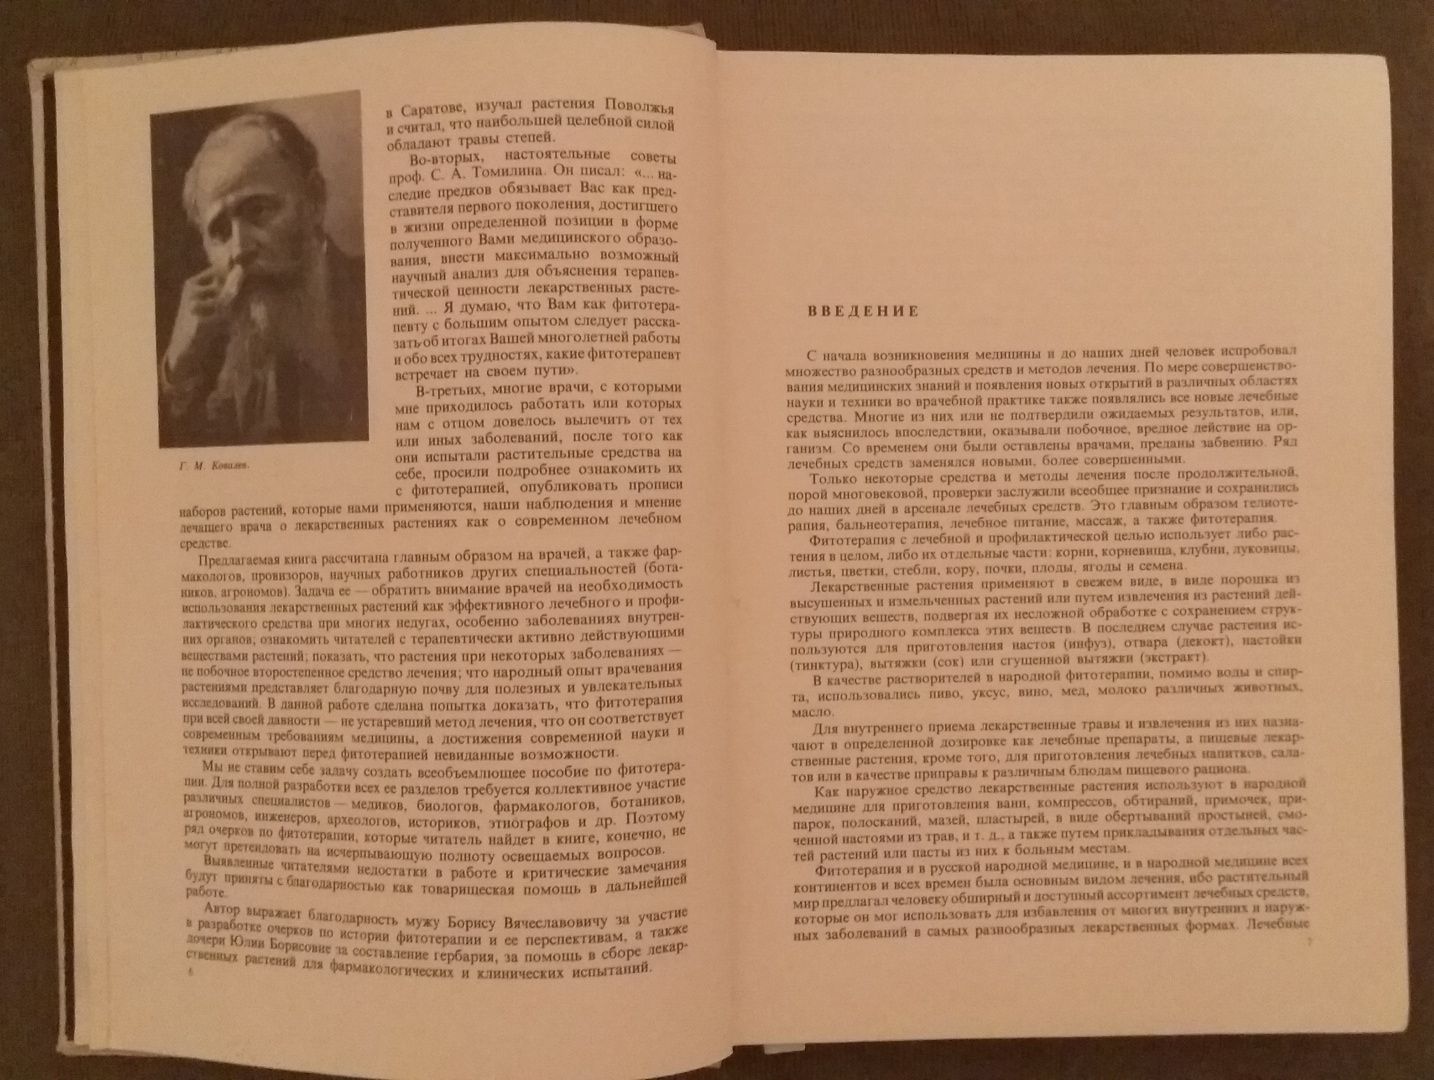 Книга "ЛЕЧЕНИЕ РАСТЕНИЯМИ" H. Г. КОВАЛЕВА 1972 год интересная и редкая